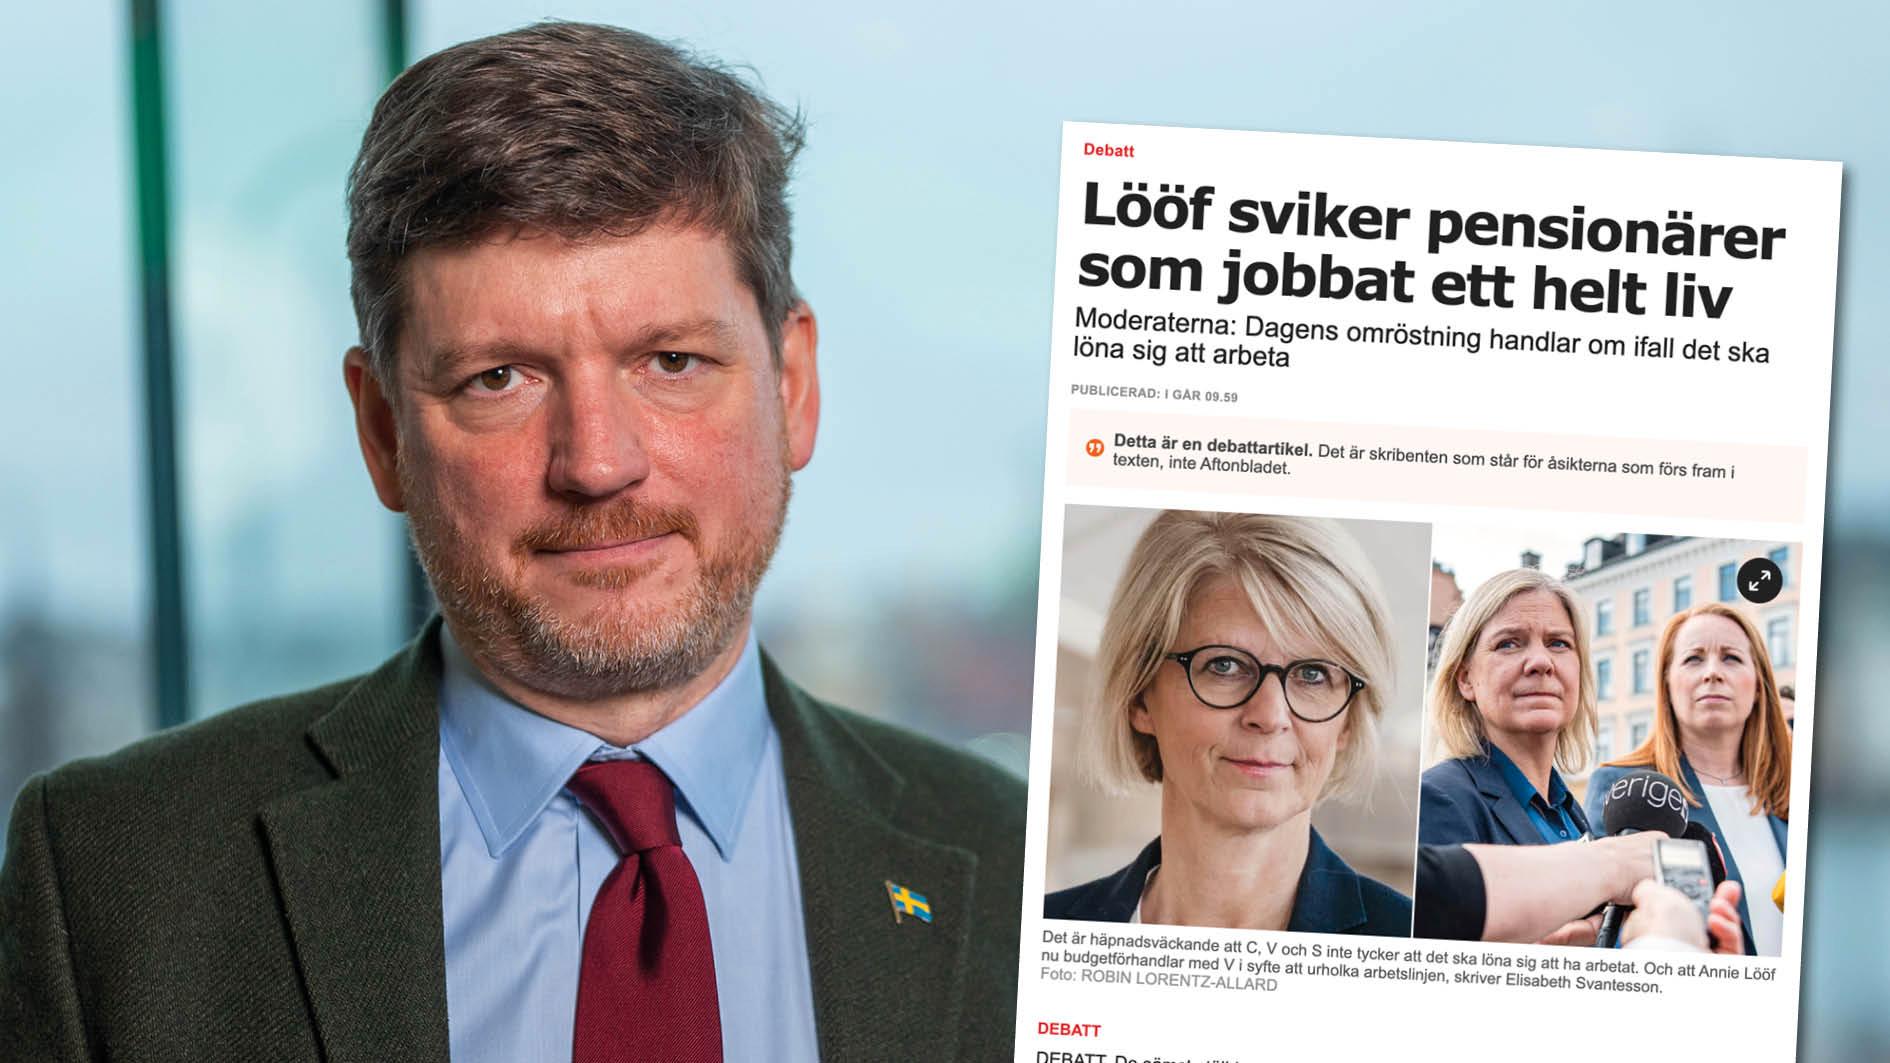 Det vore välgörande om M, även under ett valår, kunde släppa SD:s obstruktioner och komma tillbaka till ett konstruktivt och respektfullt samarbete i avgörande frågor för Sverige, skriver Martin Ådahl, Centerpartiet.